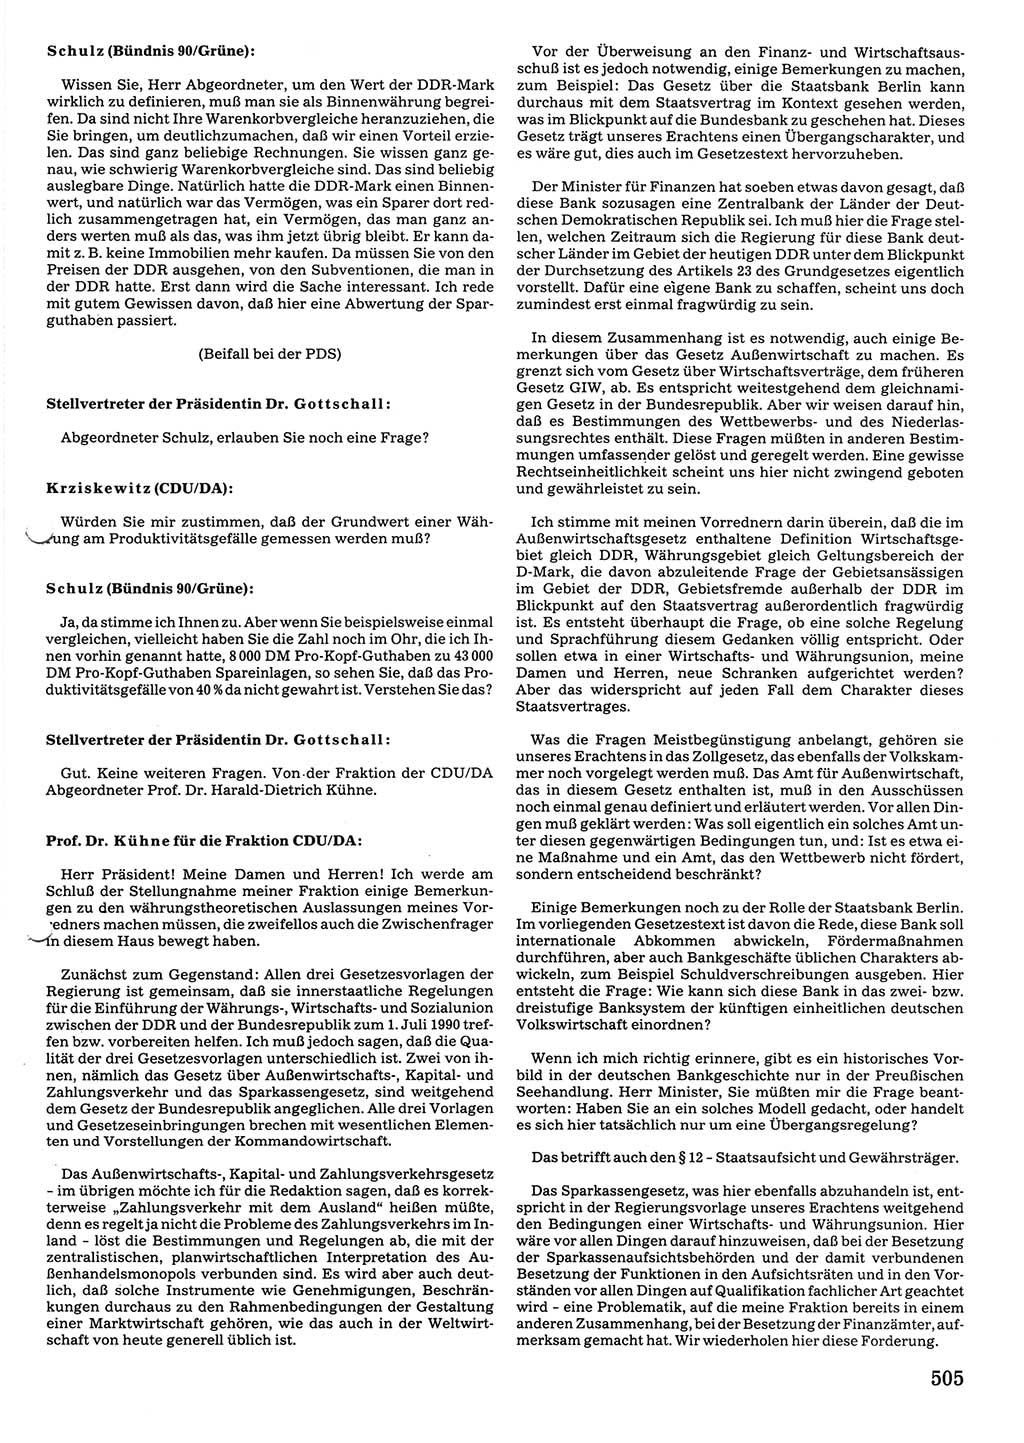 Tagungen der Volkskammer (VK) der Deutschen Demokratischen Republik (DDR), 10. Wahlperiode 1990, Seite 505 (VK. DDR 10. WP. 1990, Prot. Tg. 1-38, 5.4.-2.10.1990, S. 505)